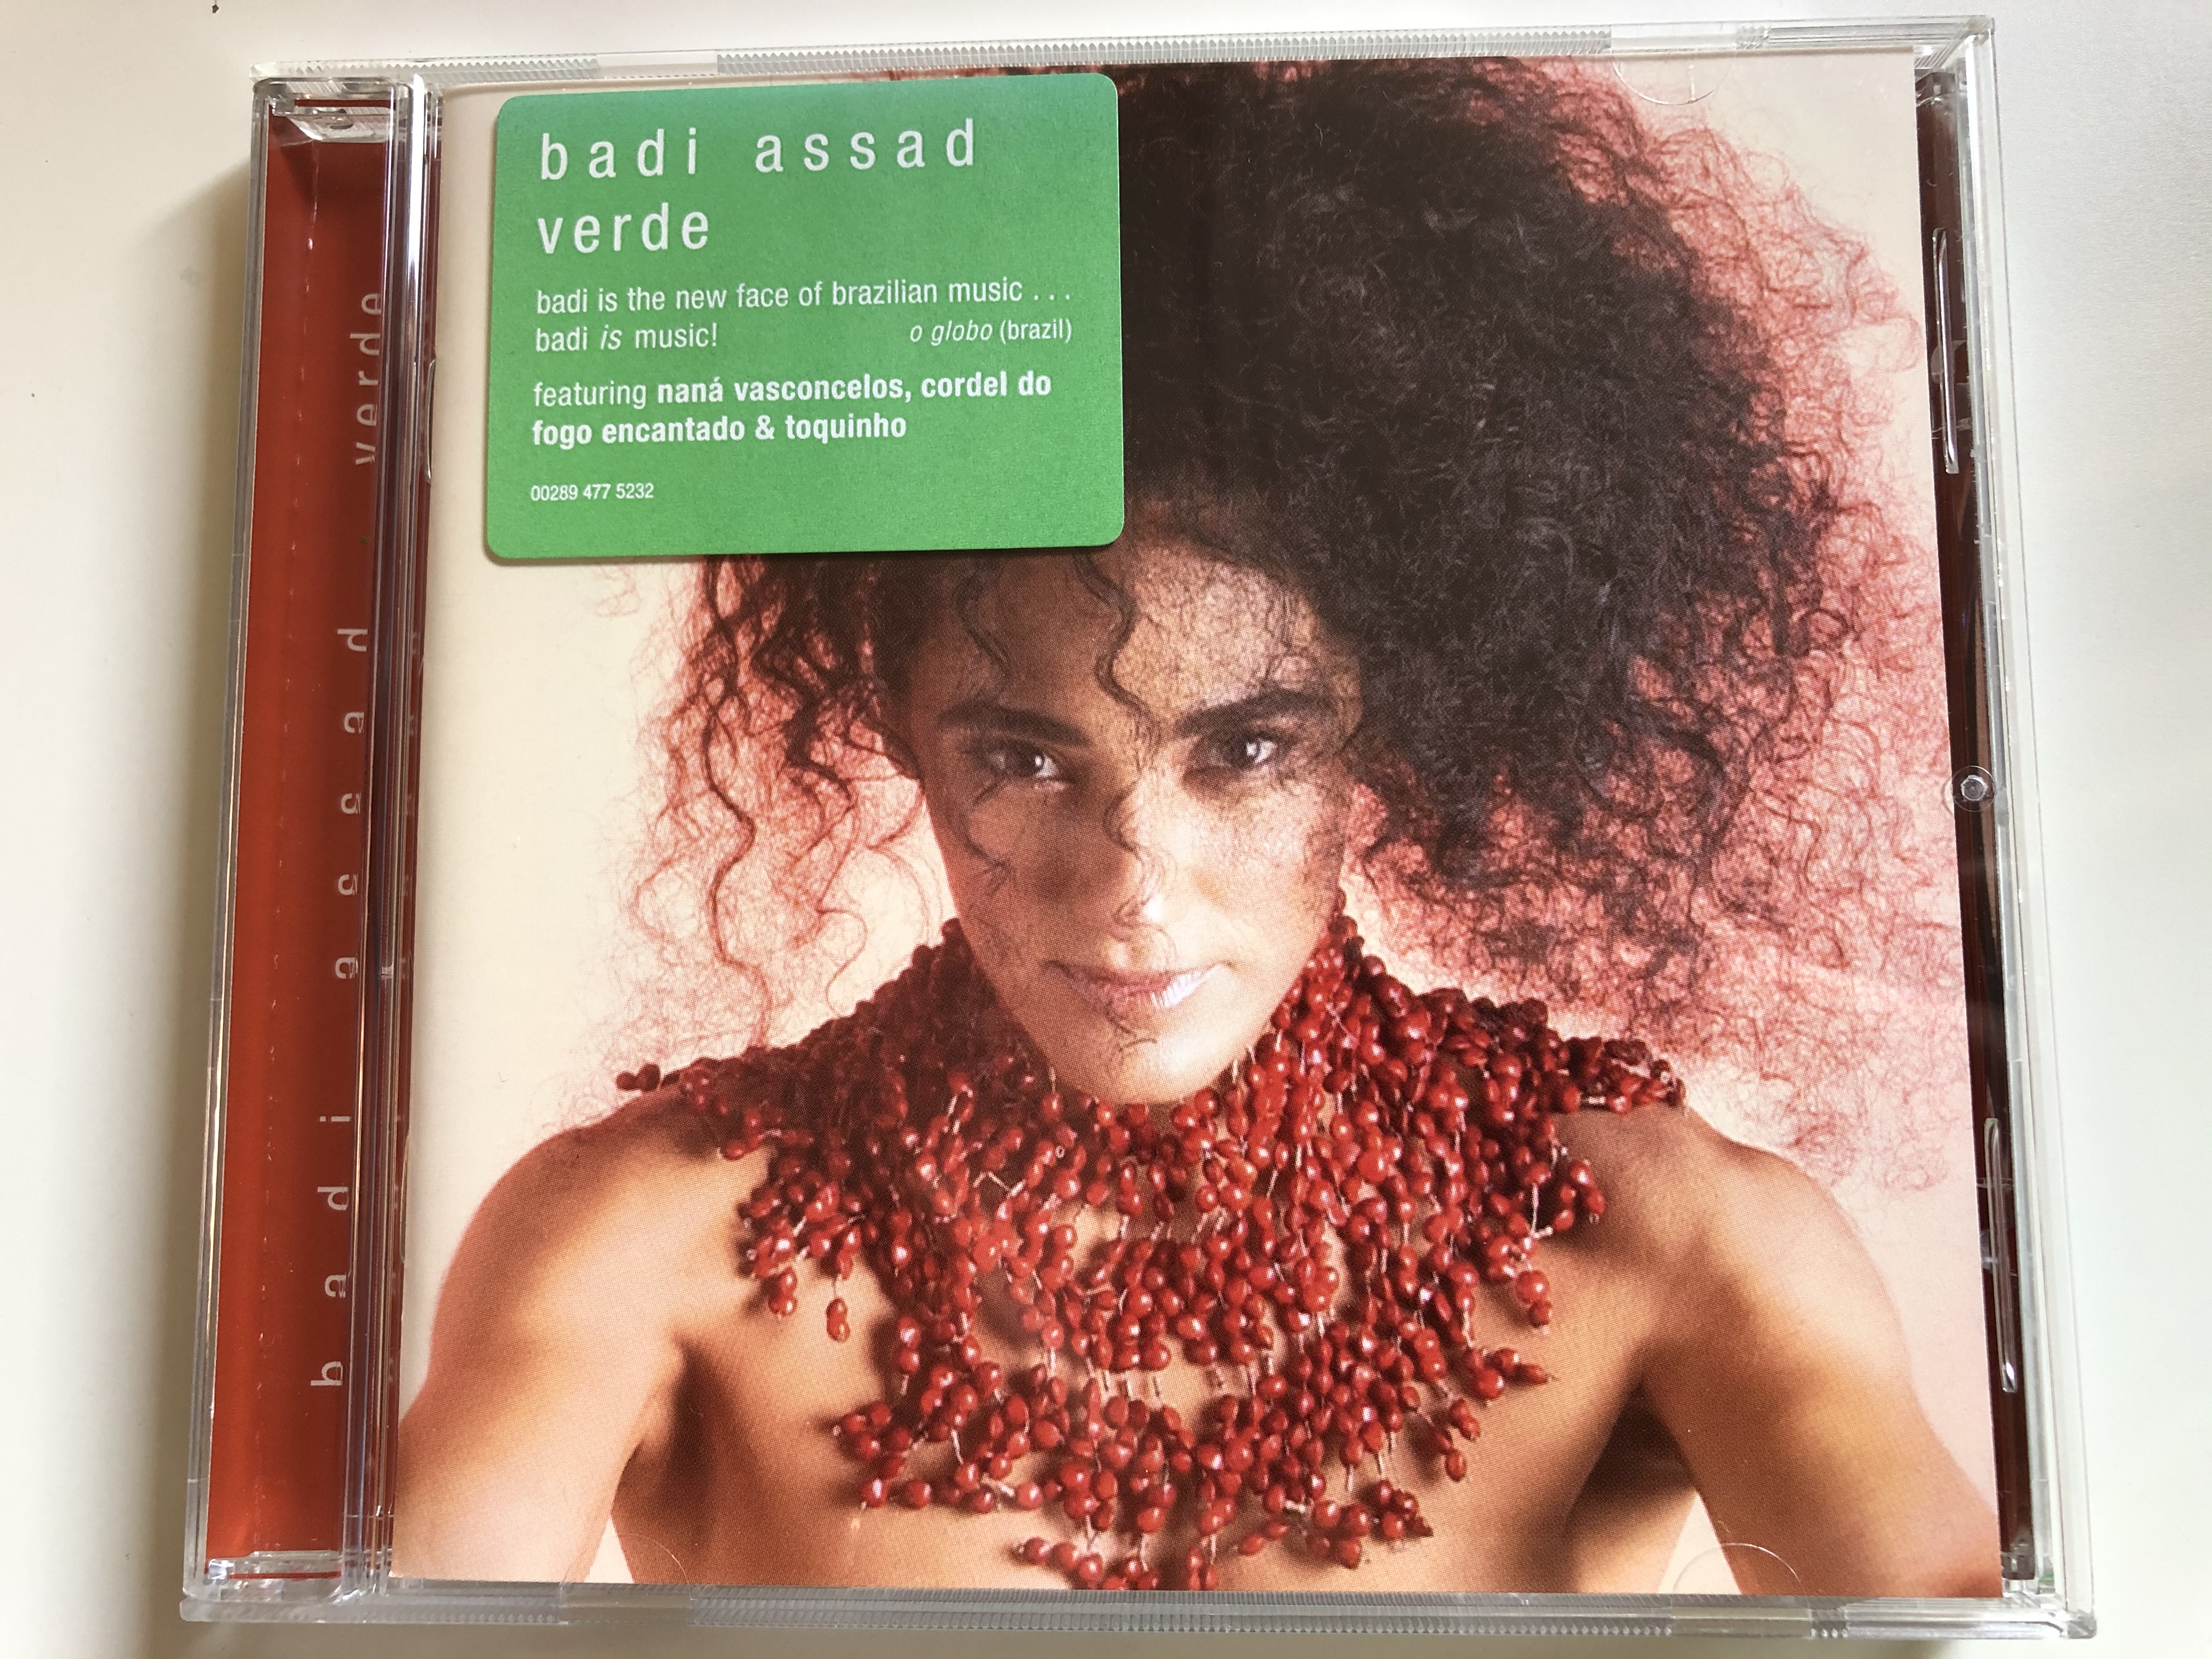 badi-assad-verde-featuring-nana-vasconcelos-cordel-do-fogo-encantado-toquinho-edge-music-audio-cd-2004-00289-477-5232-1-.jpg